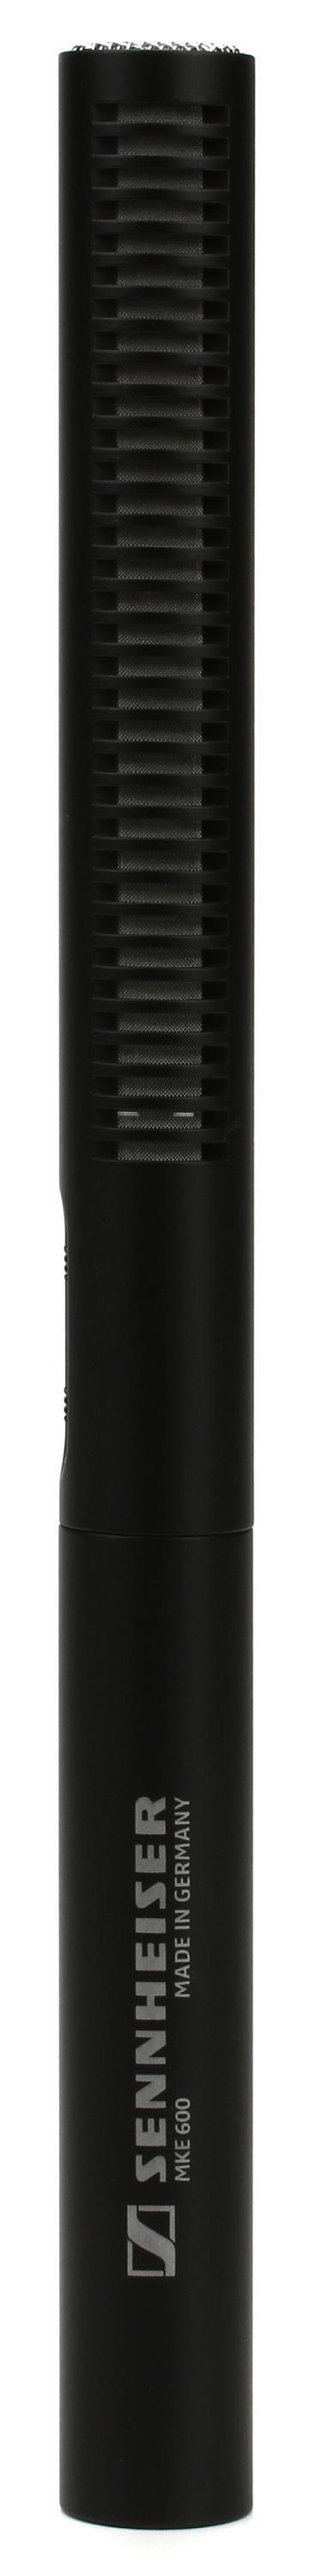 Sennheiser MKE 600 Shotgun Condenser Microphone | Sweetwater